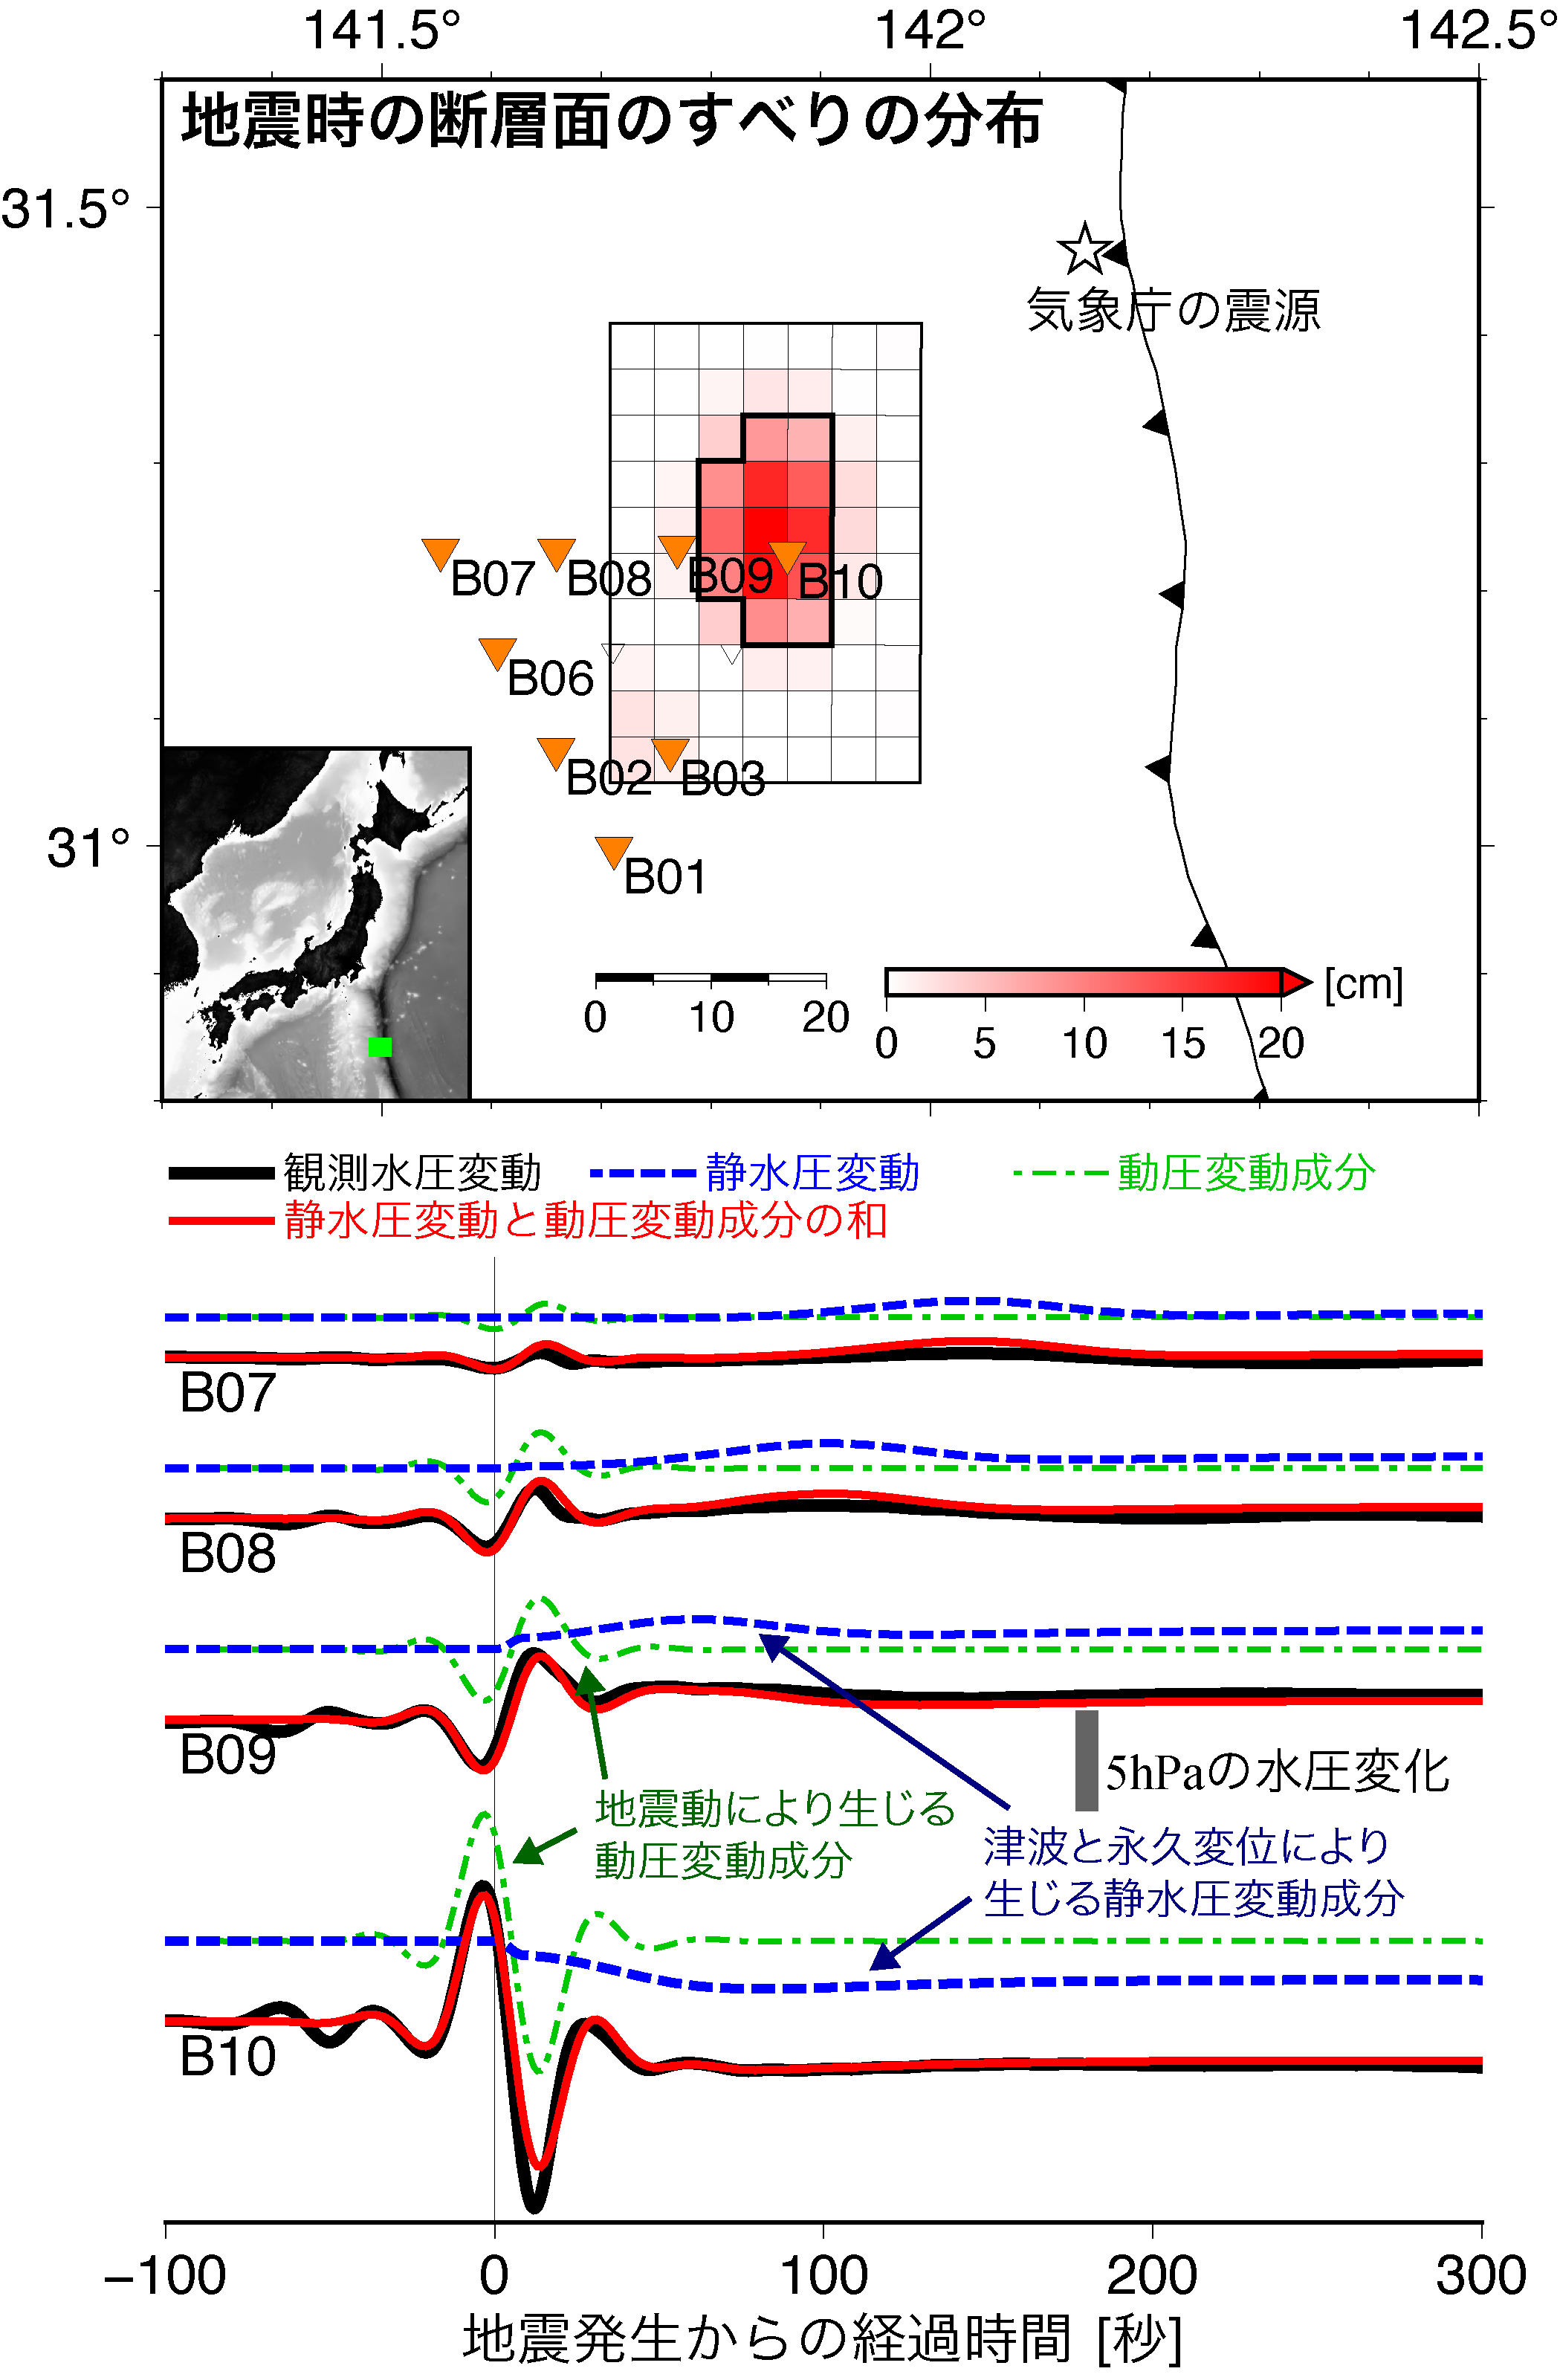 (上図) 解析により推定された本震の断層すべり分布．オレンジ色の三角は観測点の位置を表す．星は気象庁による震源の位置を示す．(下図) 観測点B07，B08，B09，B10における，観測波形 (黒) と合成波形の比較．合成波形のうち，静水圧変動成分，動圧変動成分，および両者を足し合わせた波形をそれぞれ青，緑，赤線で示した．